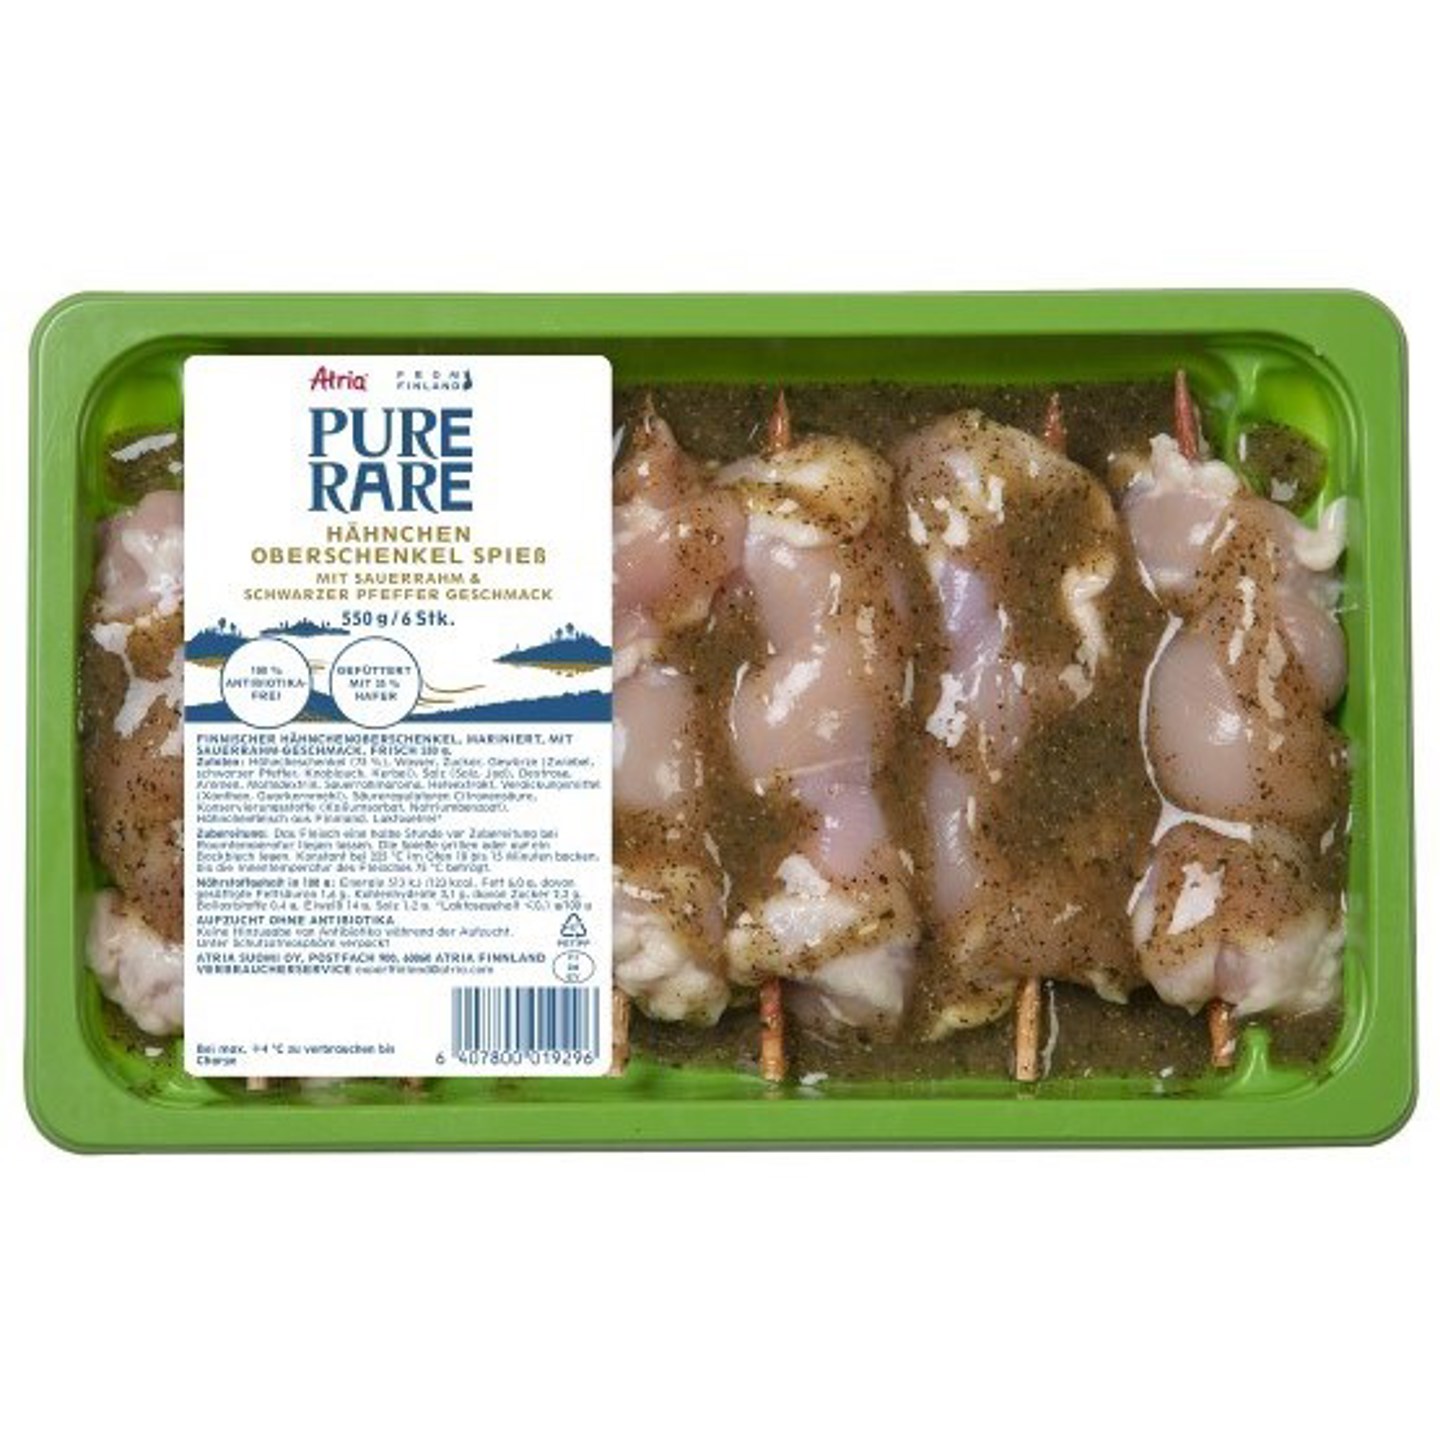 Finnisches Hähnchenoberschenkelfleisch, mariniert, mit Sauerrahm-geschmack, frisch 550 g..jpg